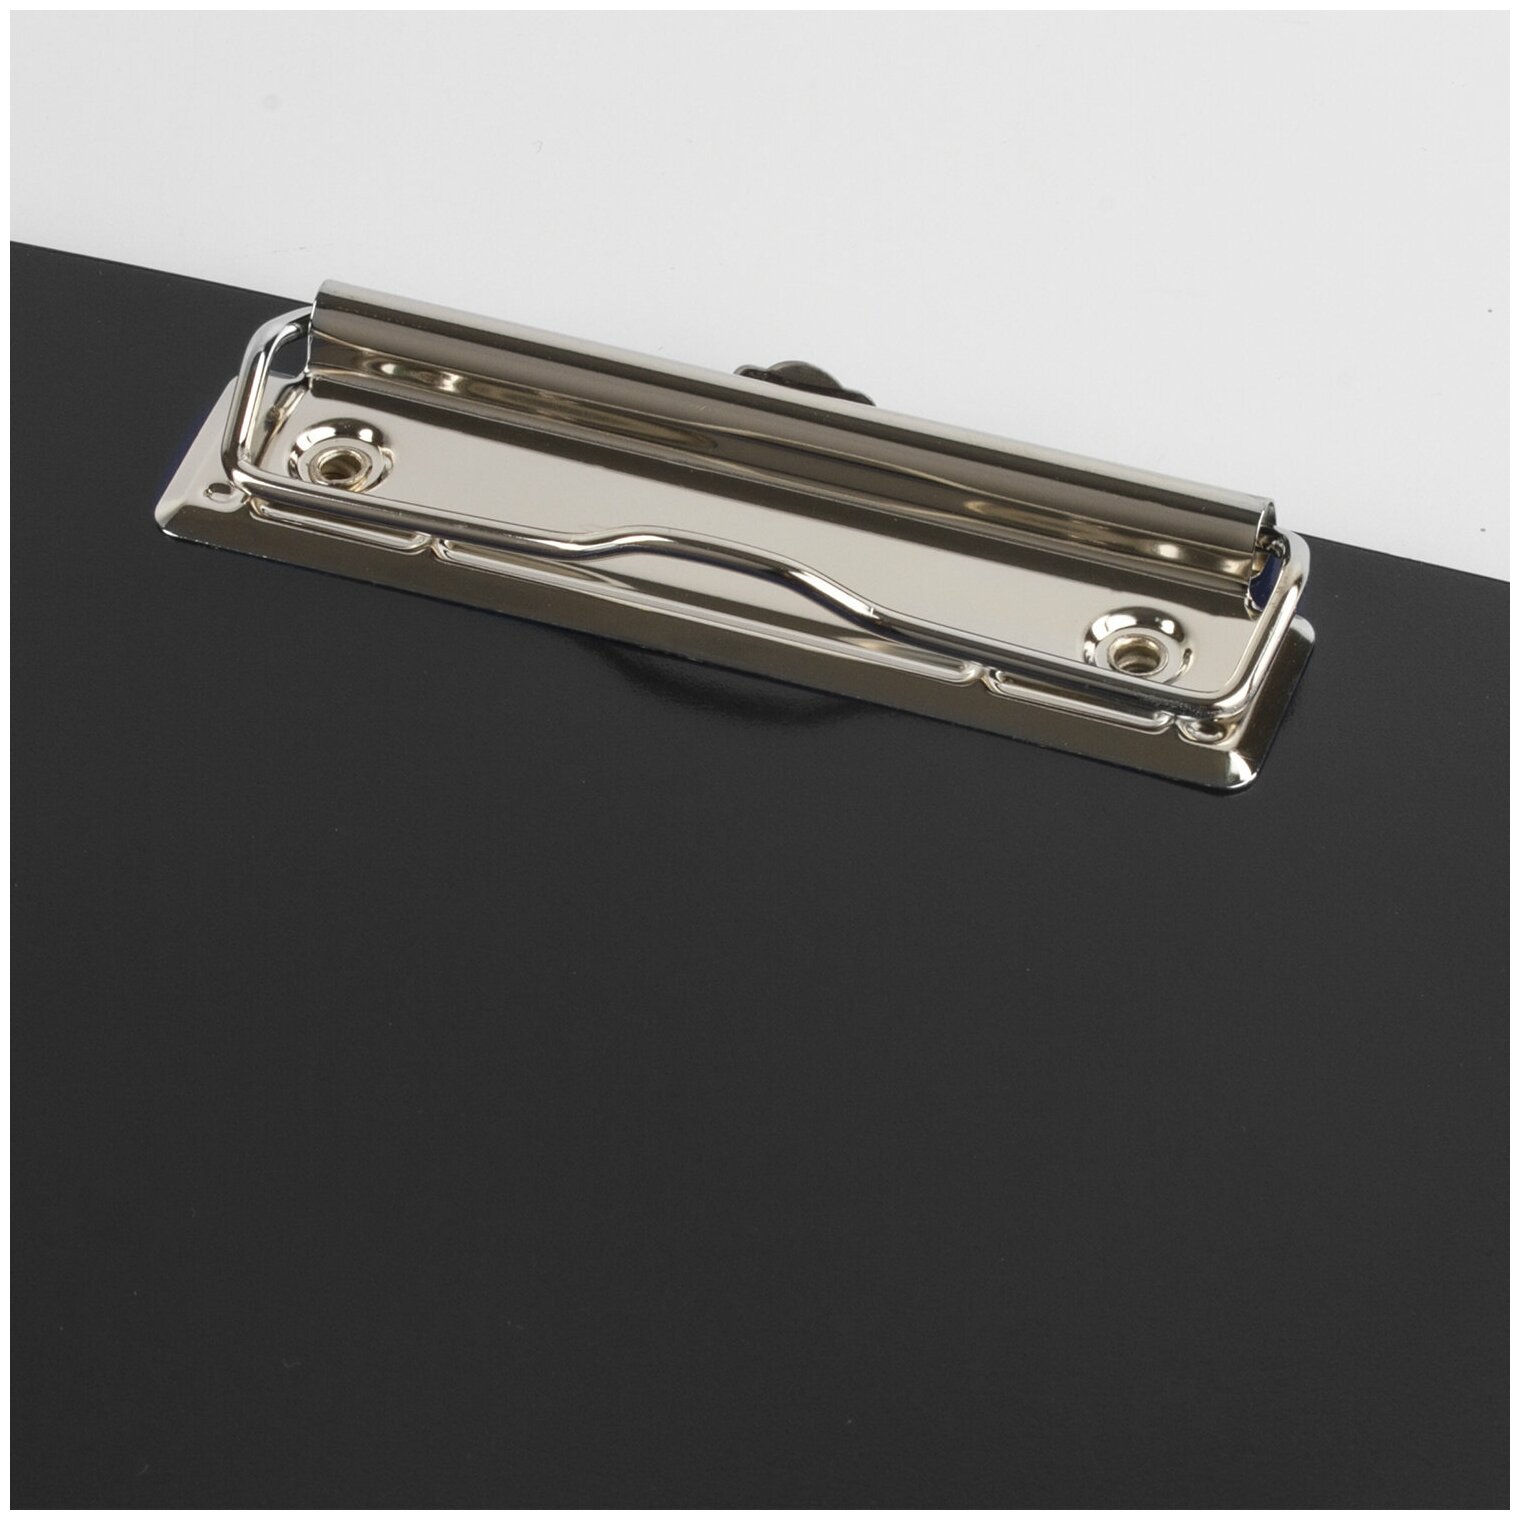 BRAUBERG Папка-планшет brauberg contract , а4 (315х230 мм), с прижимом и крышкой, пластиковая, черная, сверхпрочная, 1,5 мм, 223489